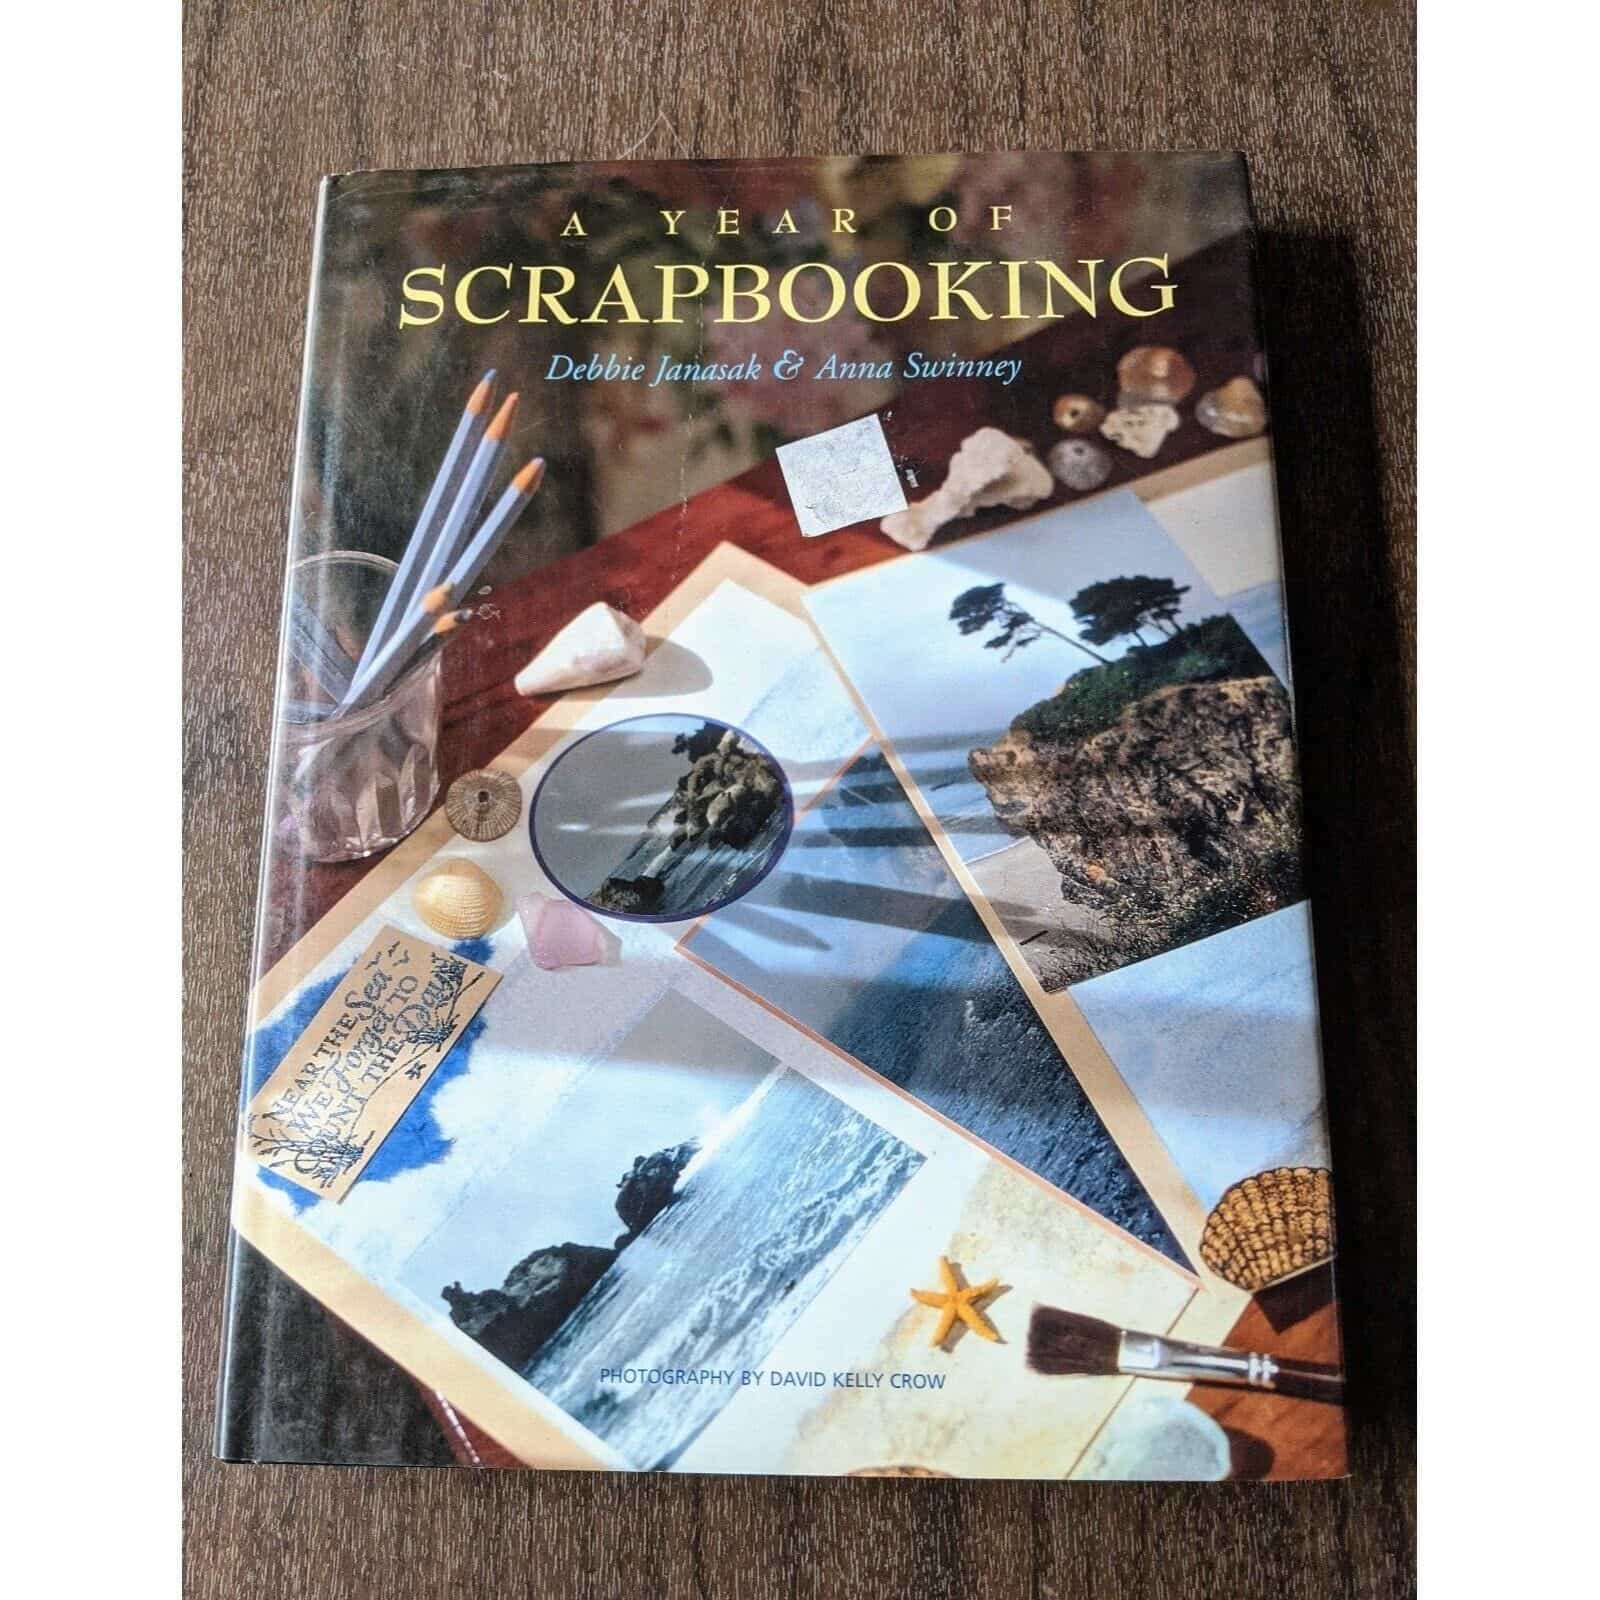 A Year Of Scrapbooking by Debbie Janasak & Anna Swinney Book